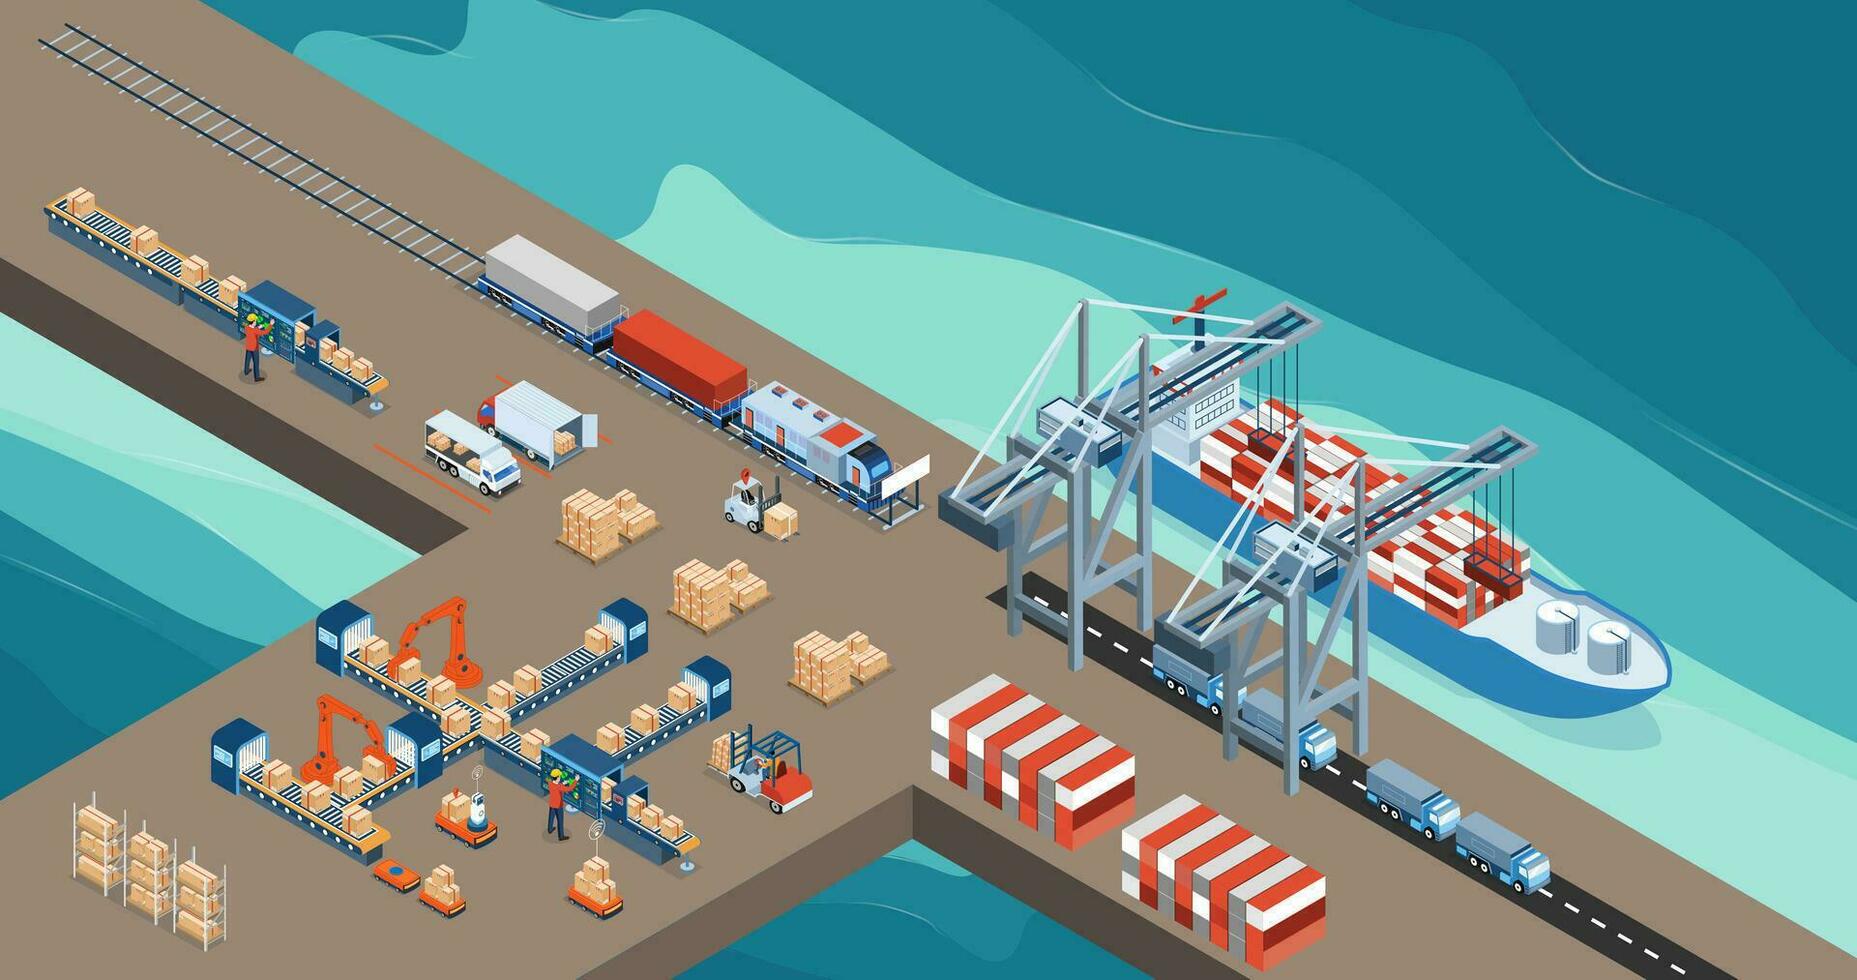 maritim Transport Logistik mit Stahl Container Wird geladen auf industriell Schiff durch Kran und Warenhaus Arbeit Verfahren. Vektor Illustration eps10